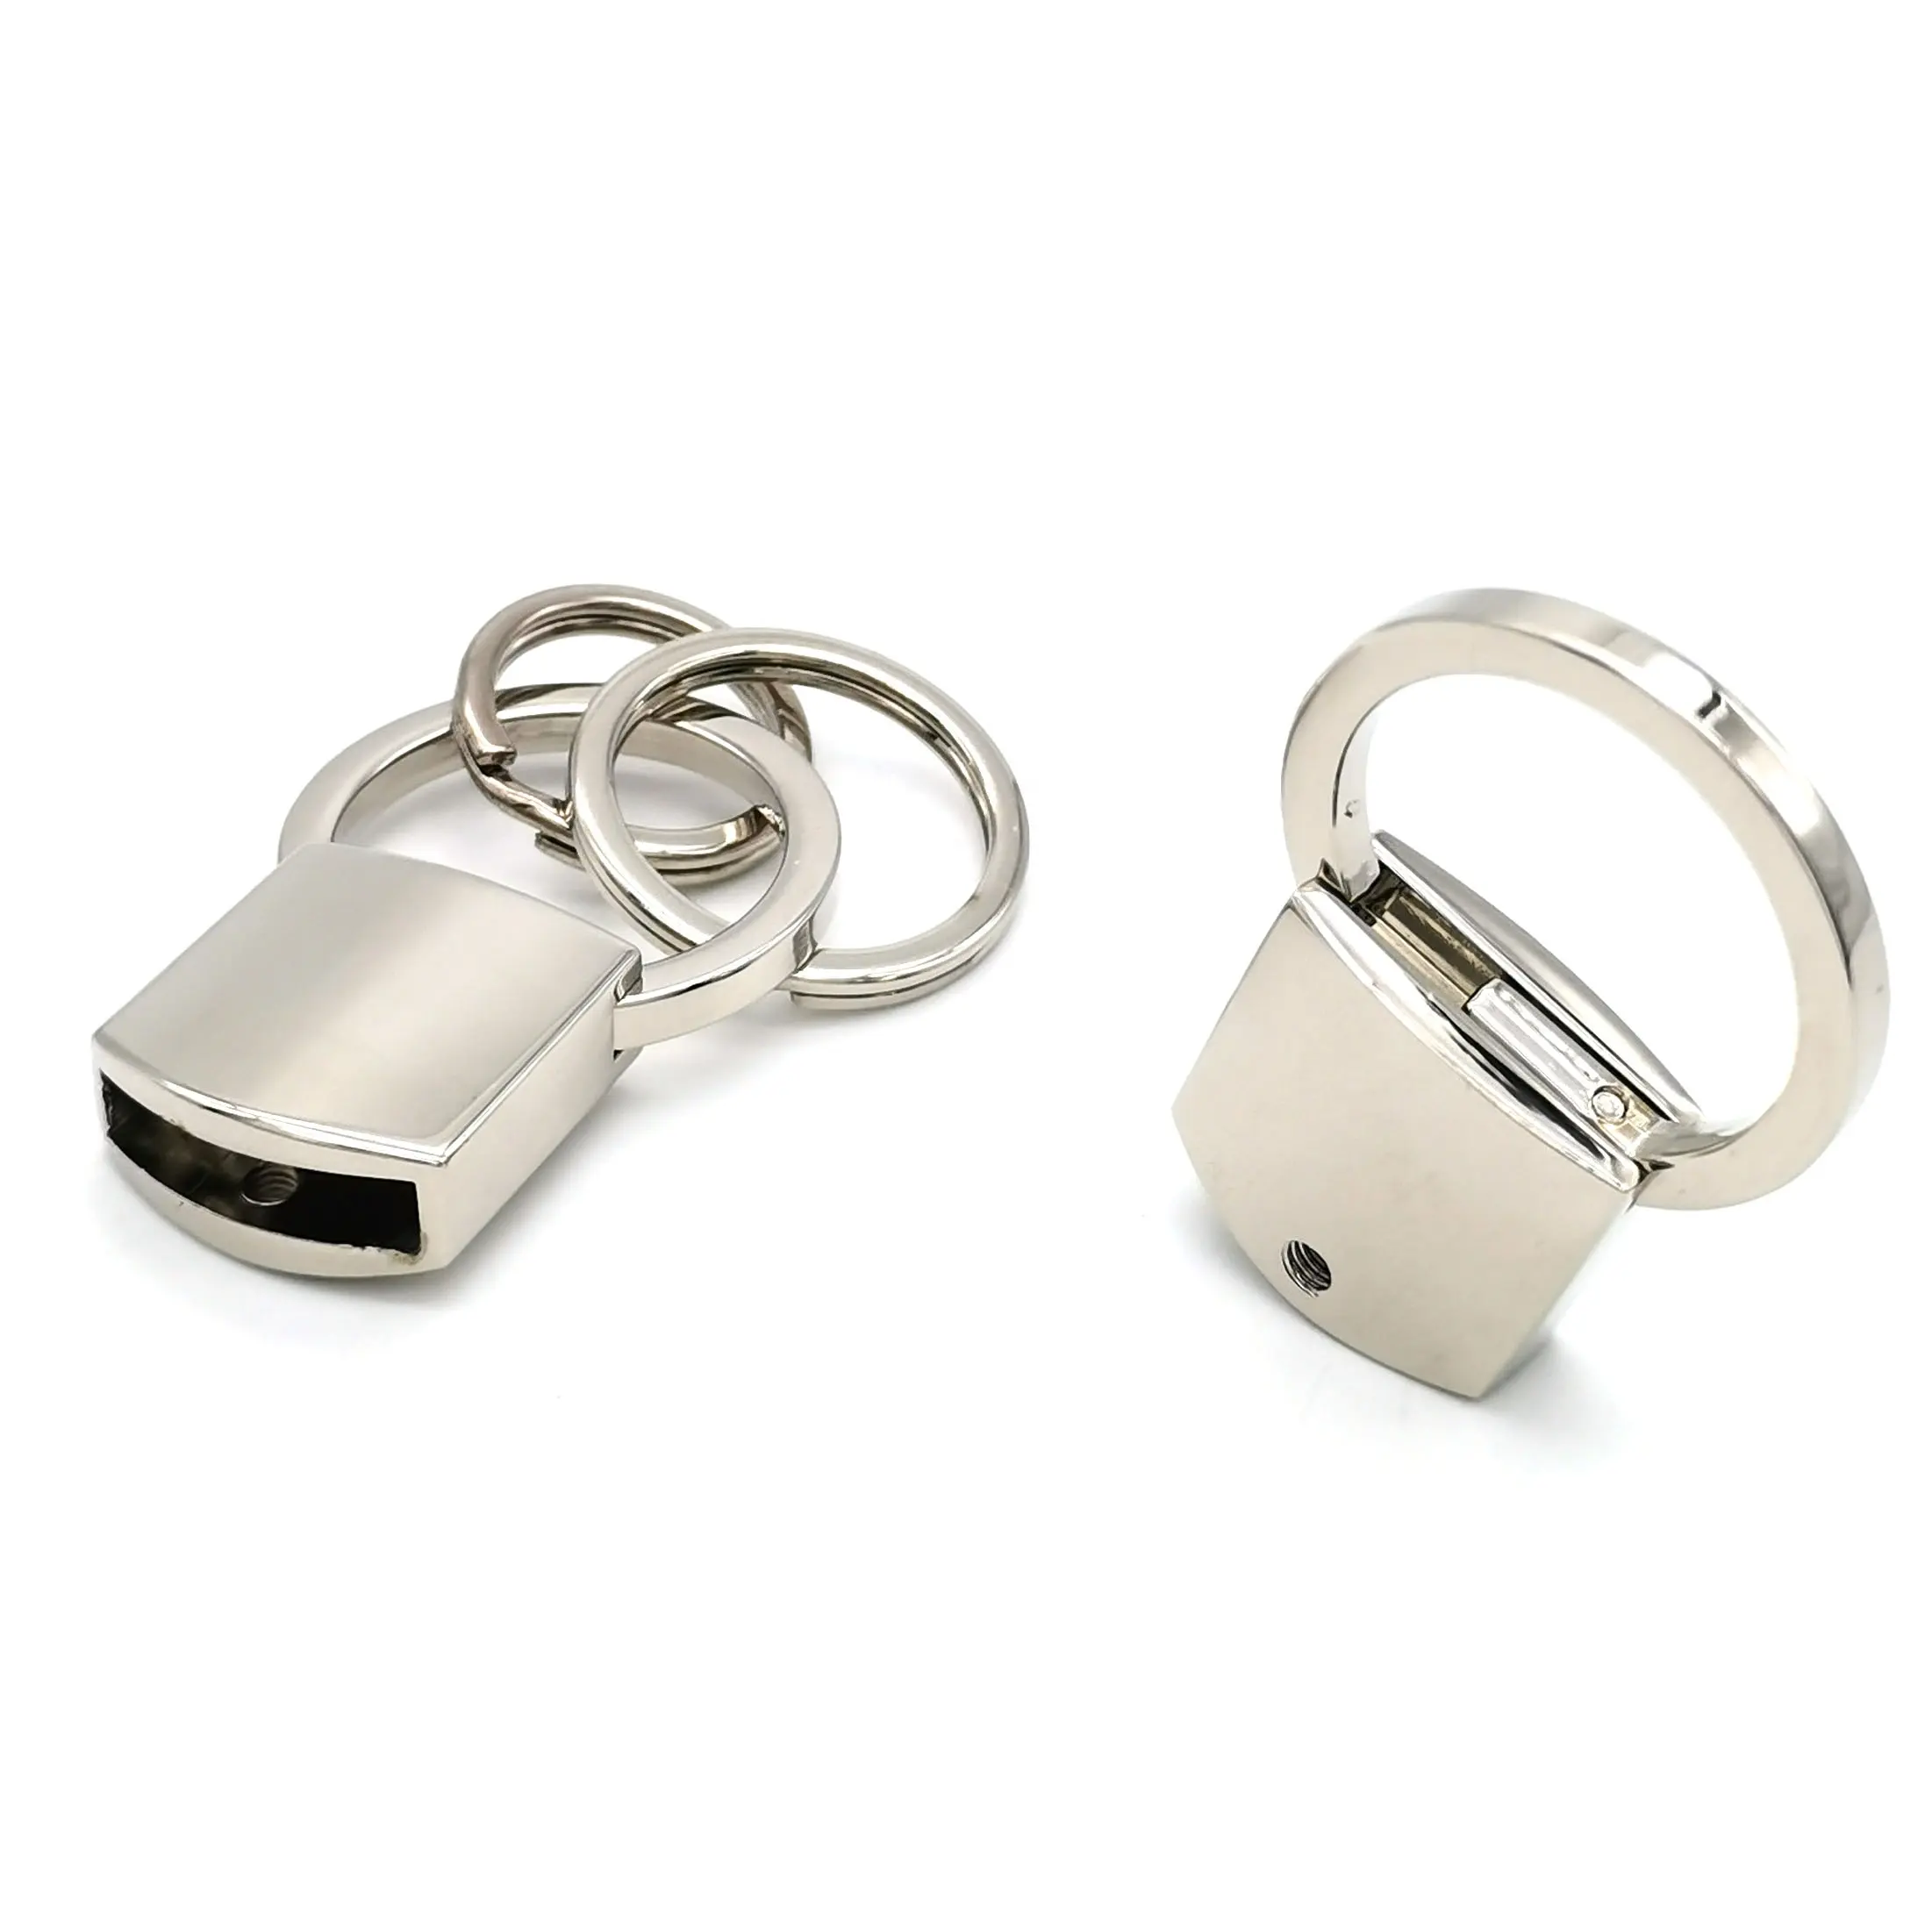 Benutzer definierte vernickelte Metall O-Ring Schlüssel bund halter Split Schlüssel ring Hochwertige Metall tasche Ringe Großhandel